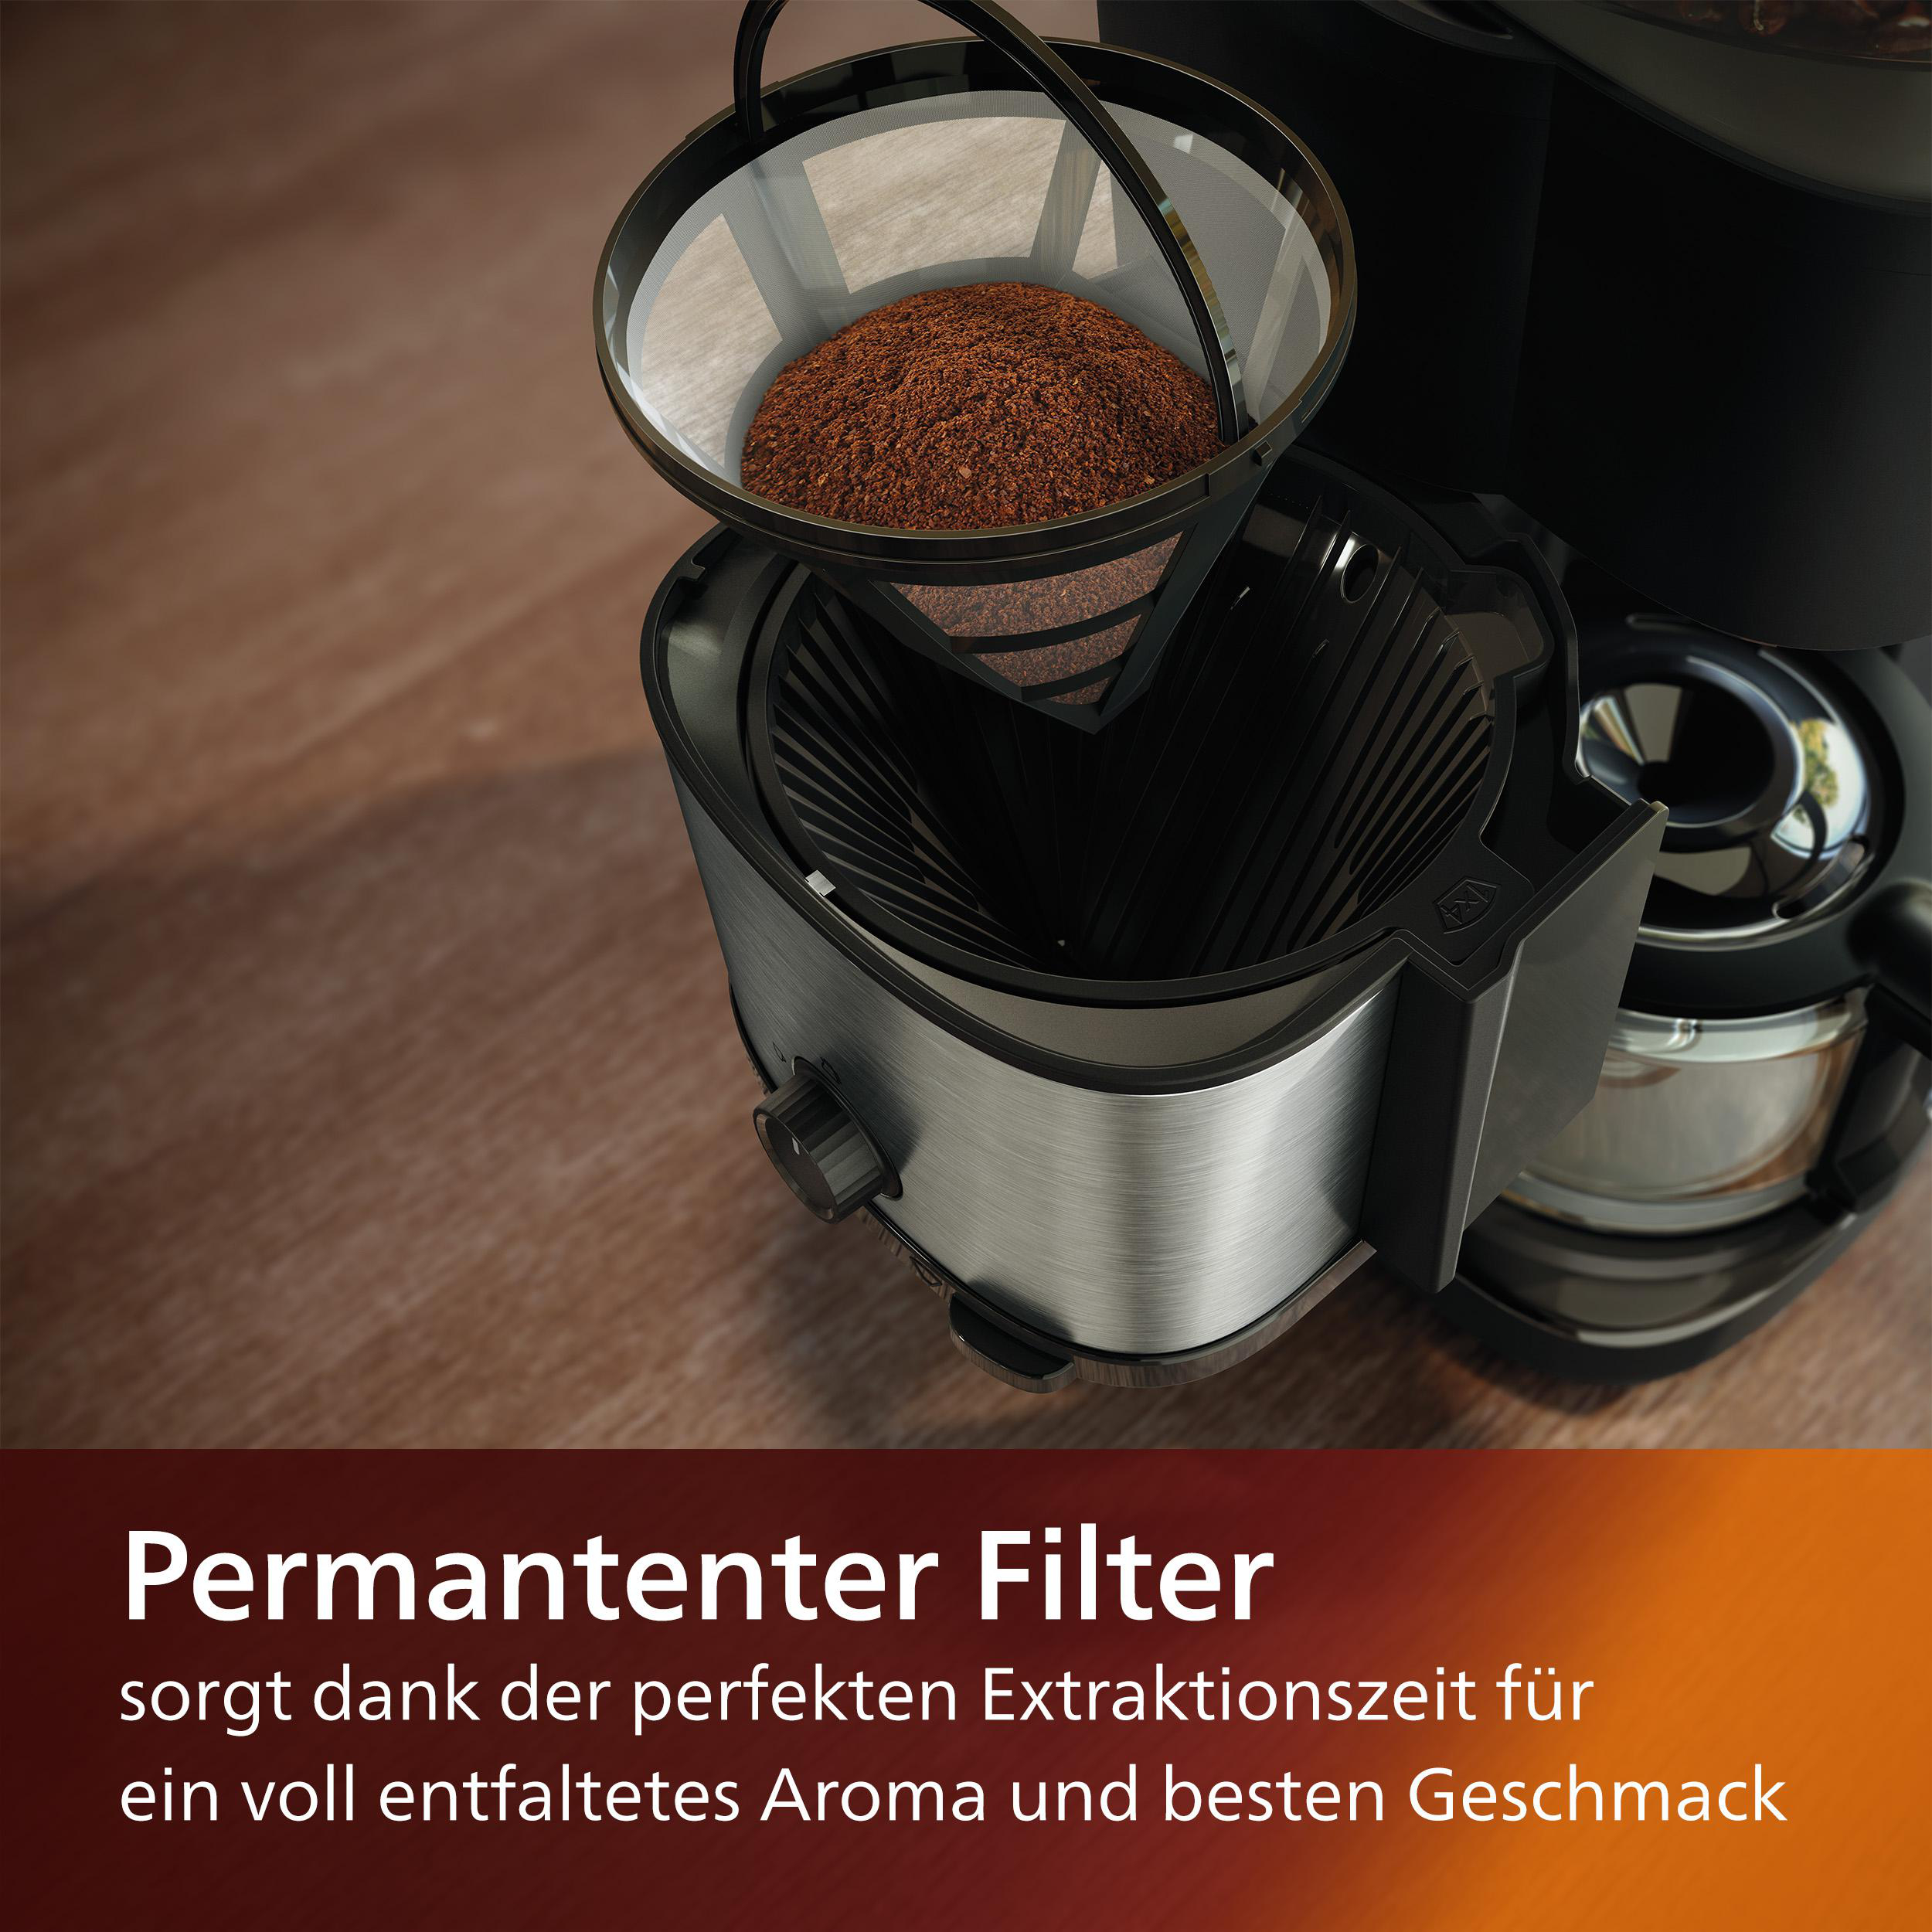 Brew, HD7900/50 und Kaffeemaschine Schwarz/Silber Permanentfilter mit All-in-1 Dosierung inkl. Dosierlöffel Duo-Kaffeebohnenbehälter, Mahlwerk, Smart PHILIPS und